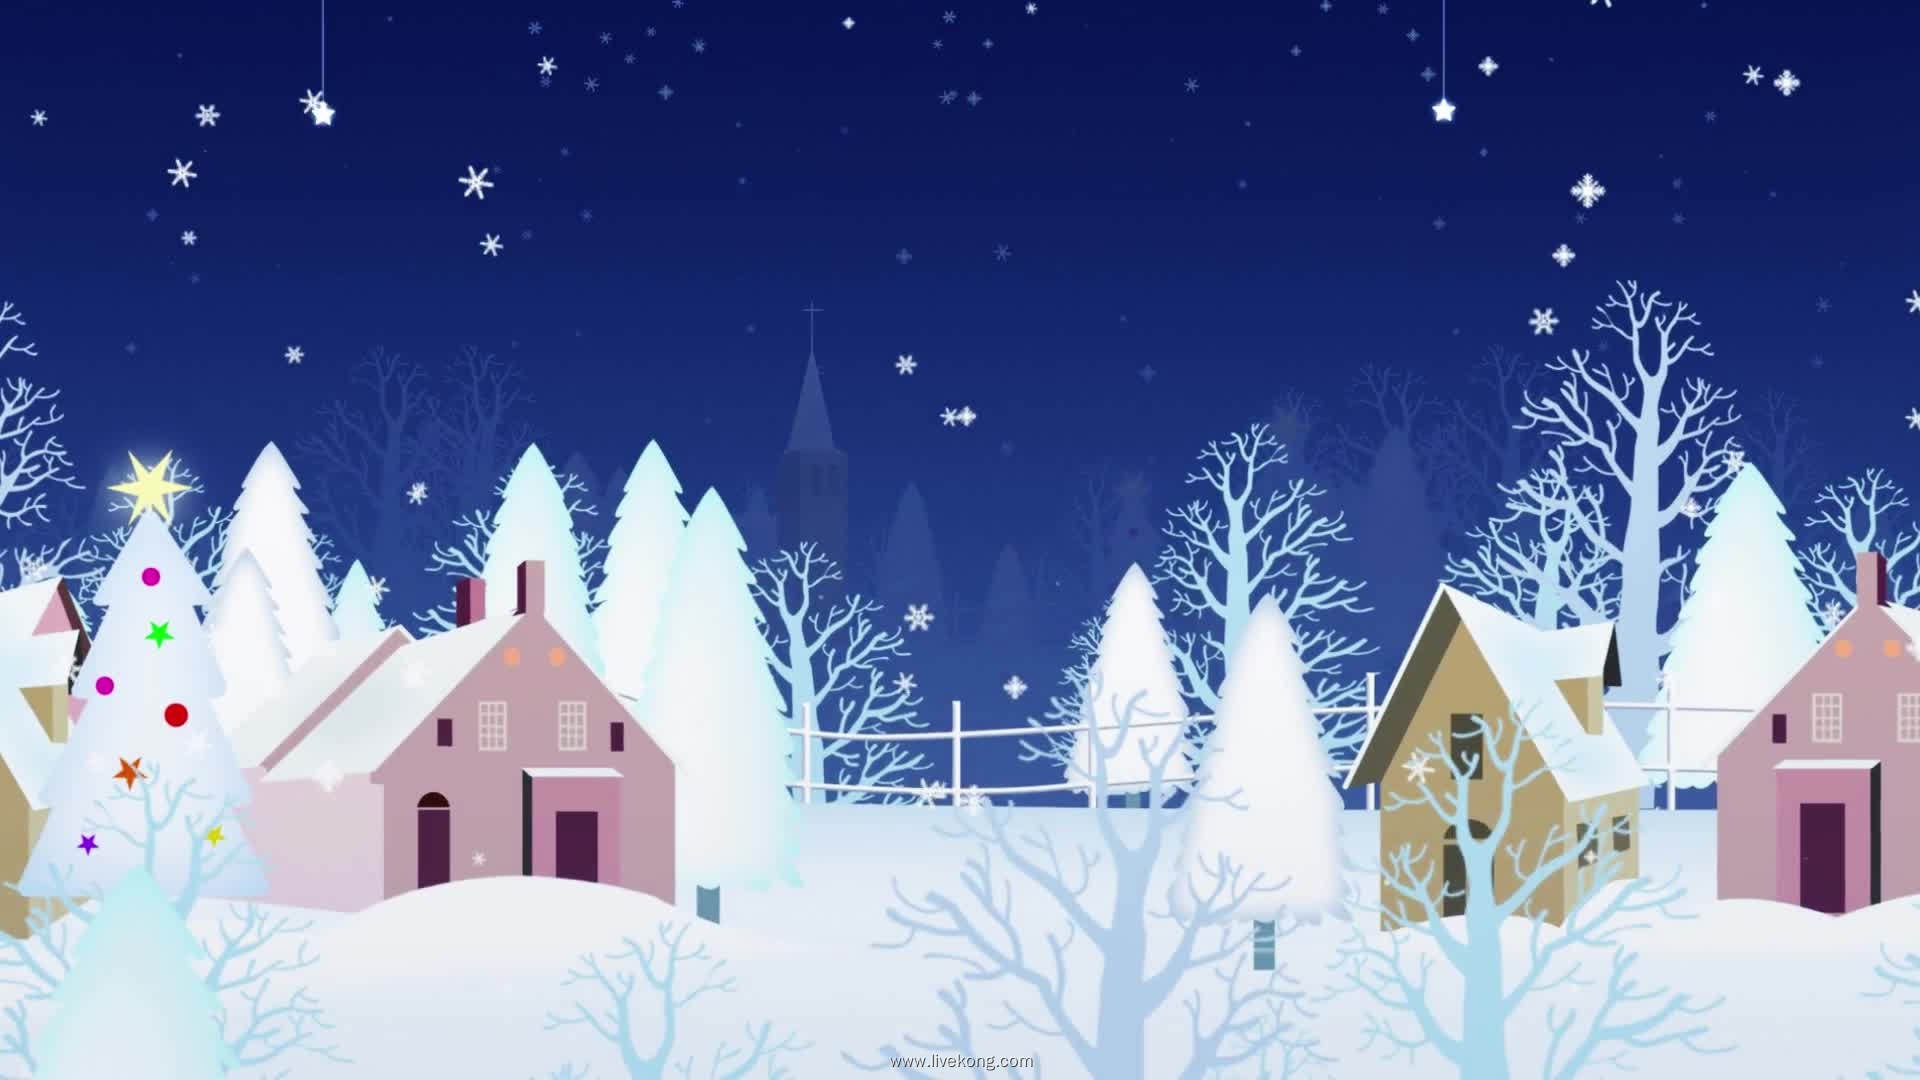 雪景动画视频背景素材-livekong来悟空-素材类-卡通素材